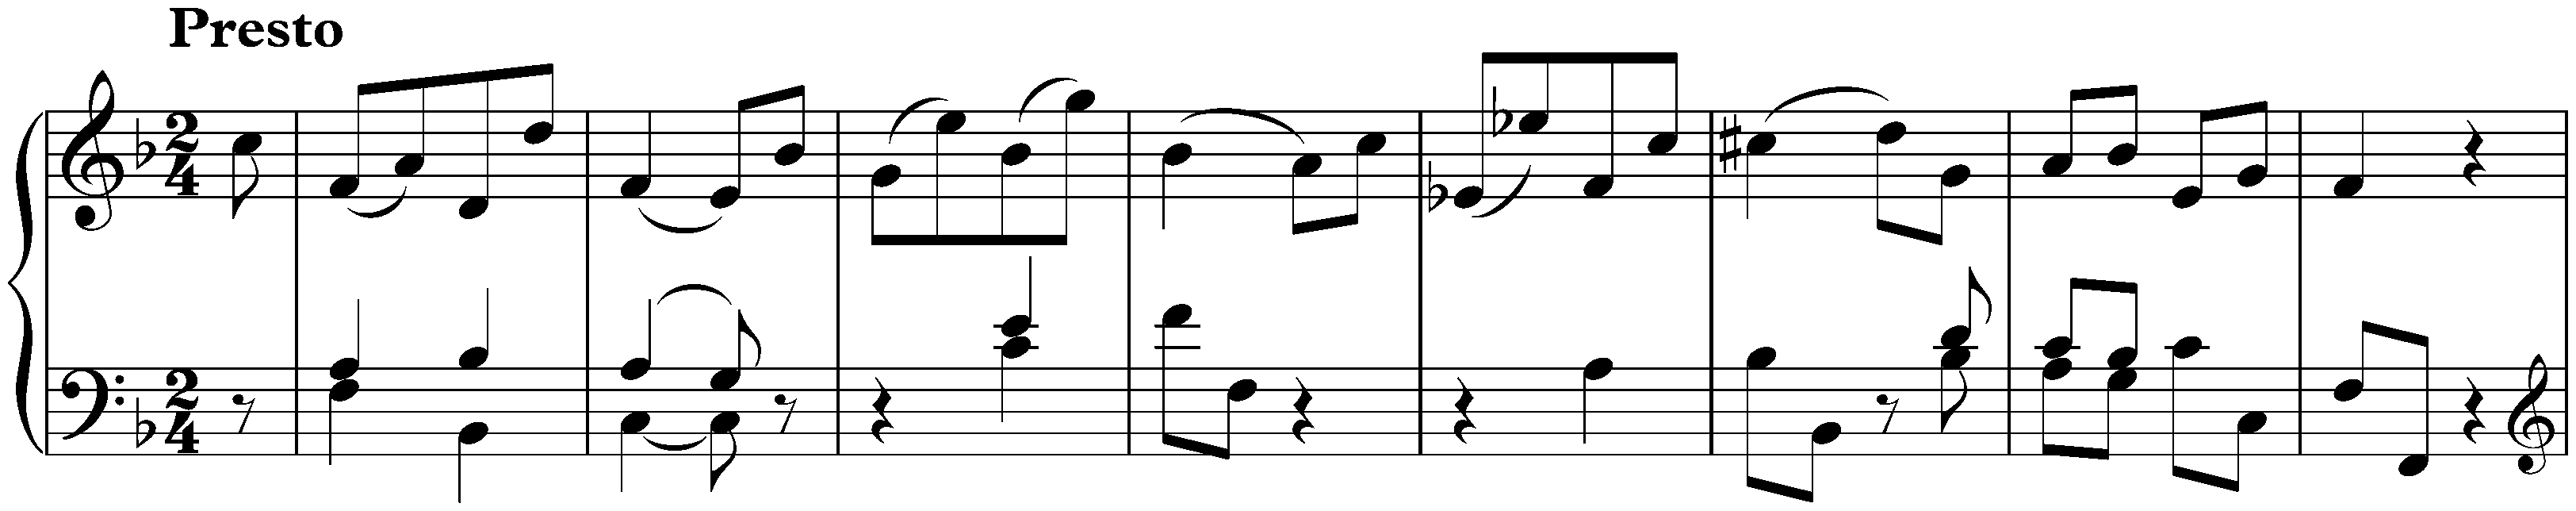 Sonata in F major, Hob. XVI:23; 3. Finale: Presto